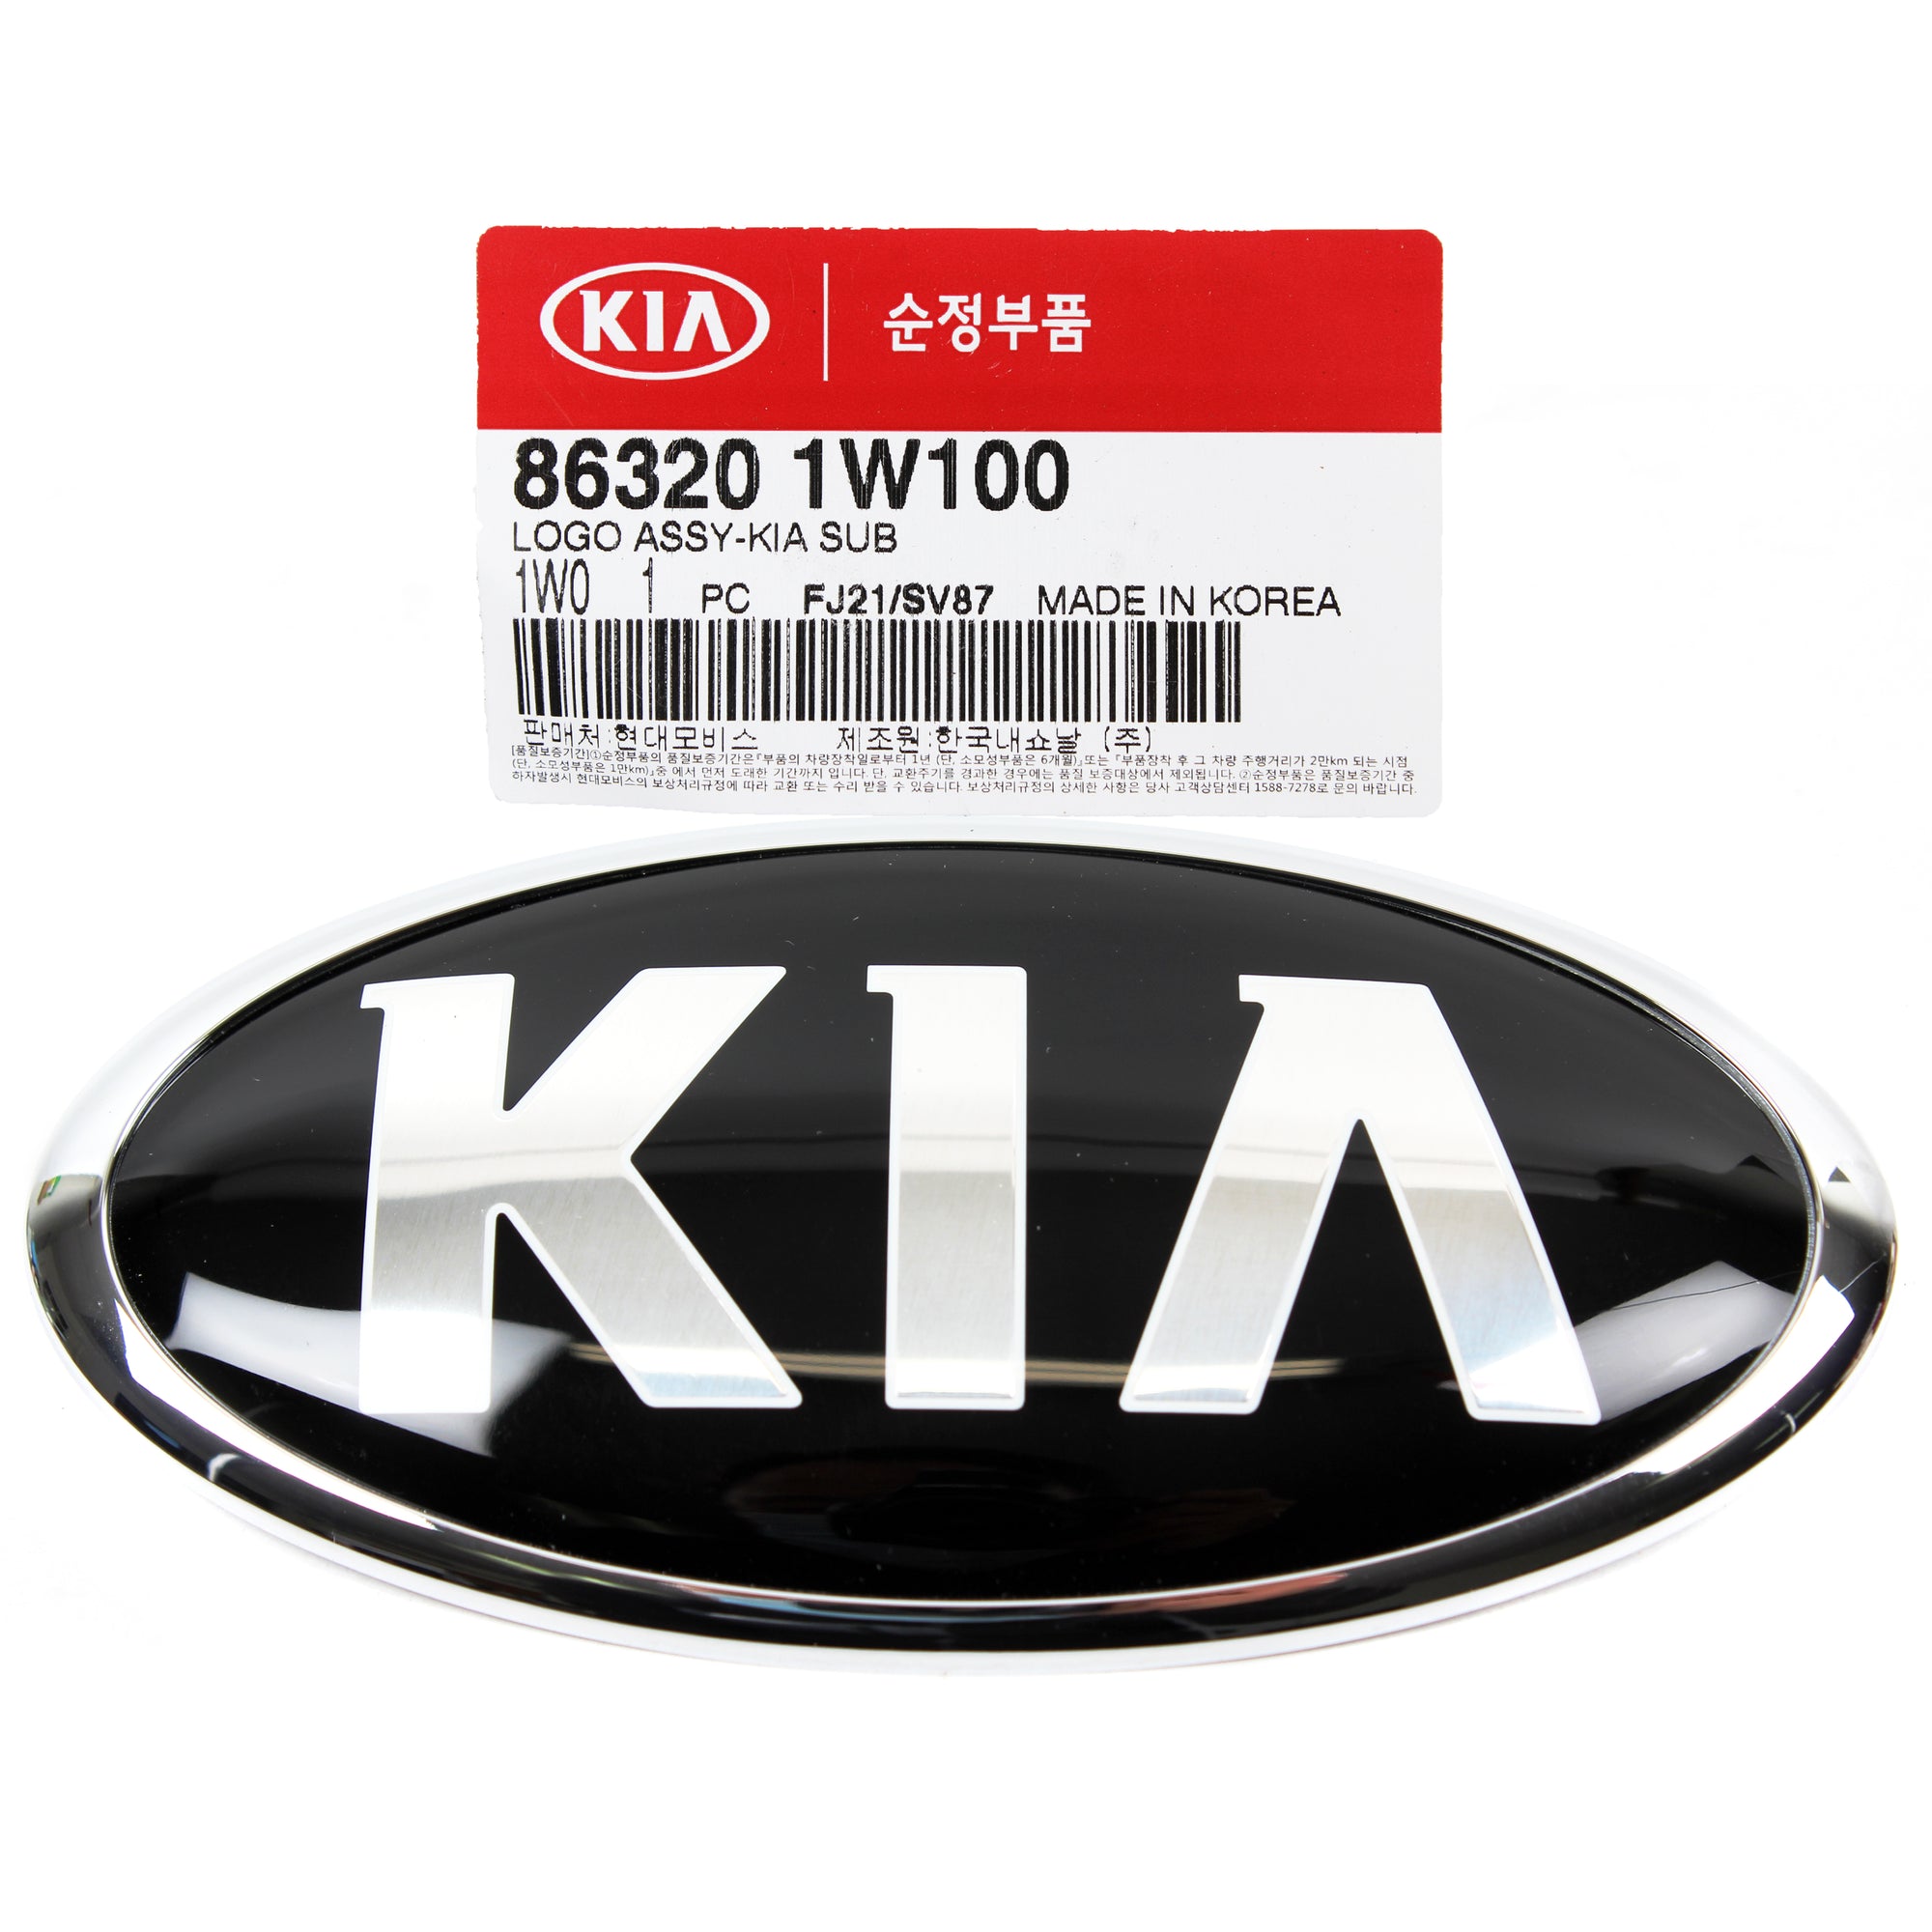 GENUINE Front Grille KIA Logo Emblem Badge for 2014-2020 Kia Rio 863201W100